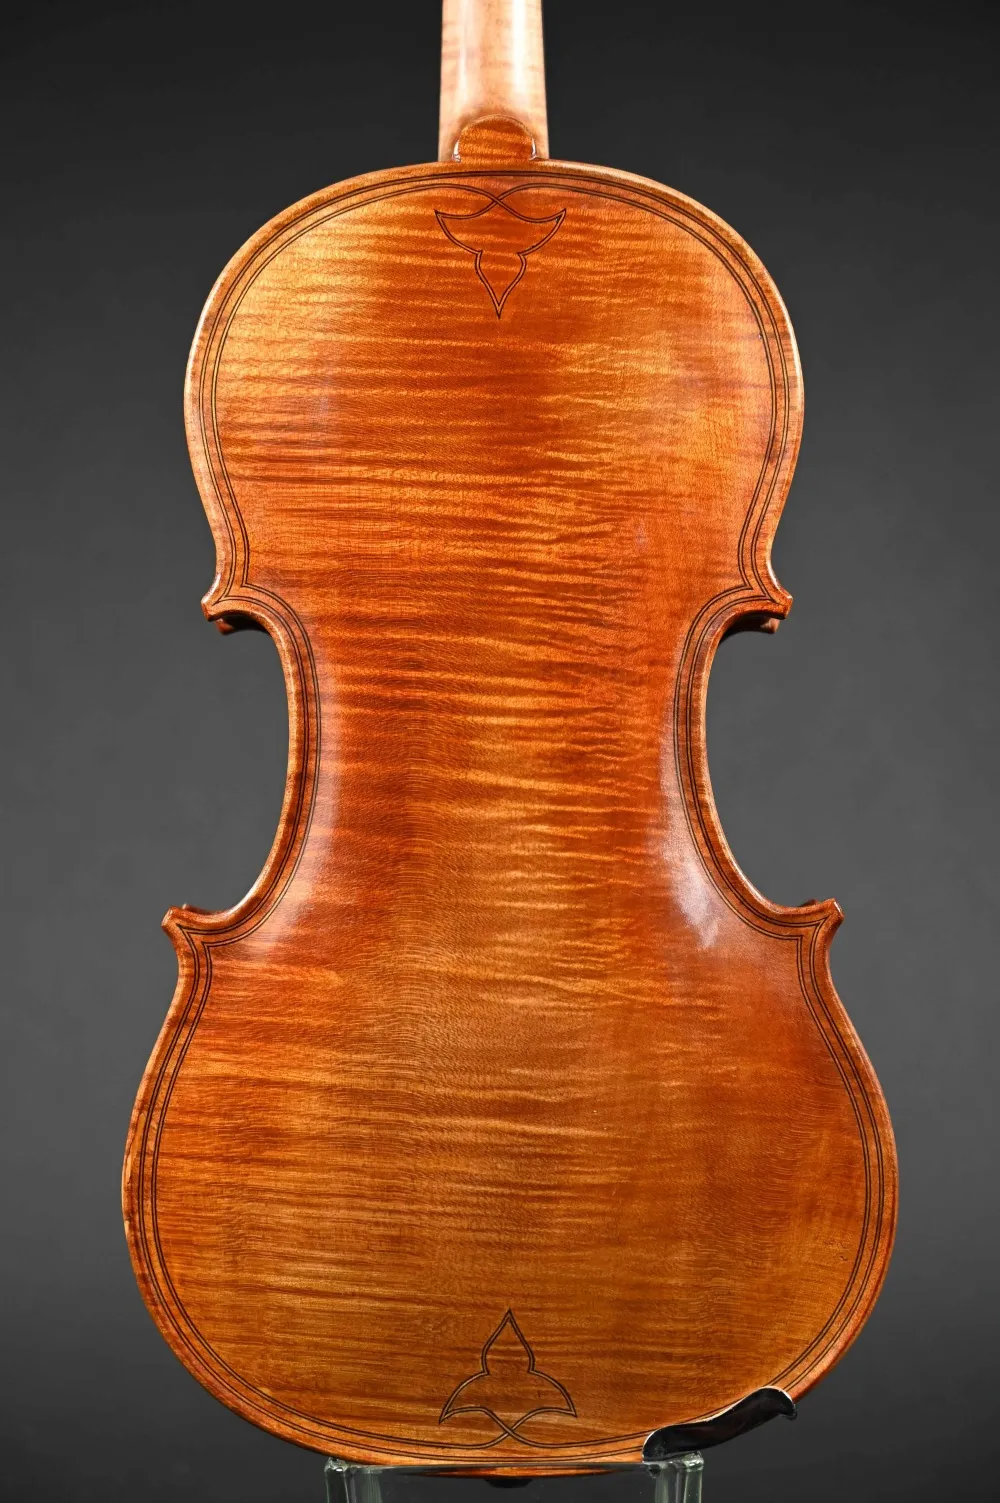 Boden-Detailansicht einer Bucur Ioan Geige (Violine) Modell Maggini, Handarbeit 2019